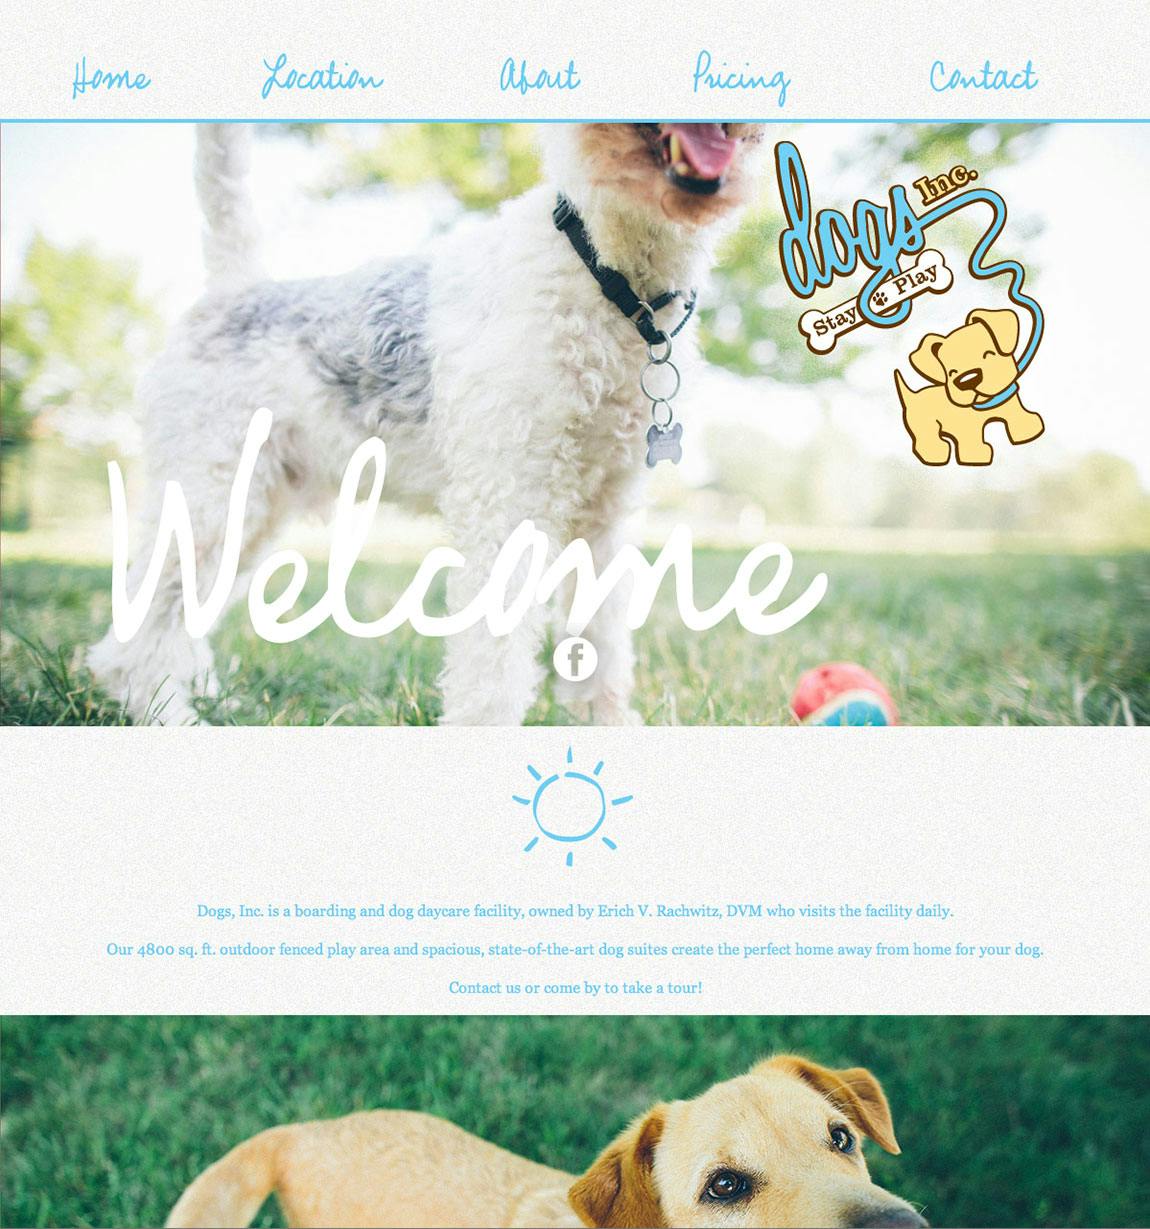 Dogs, Inc. Website Screenshot